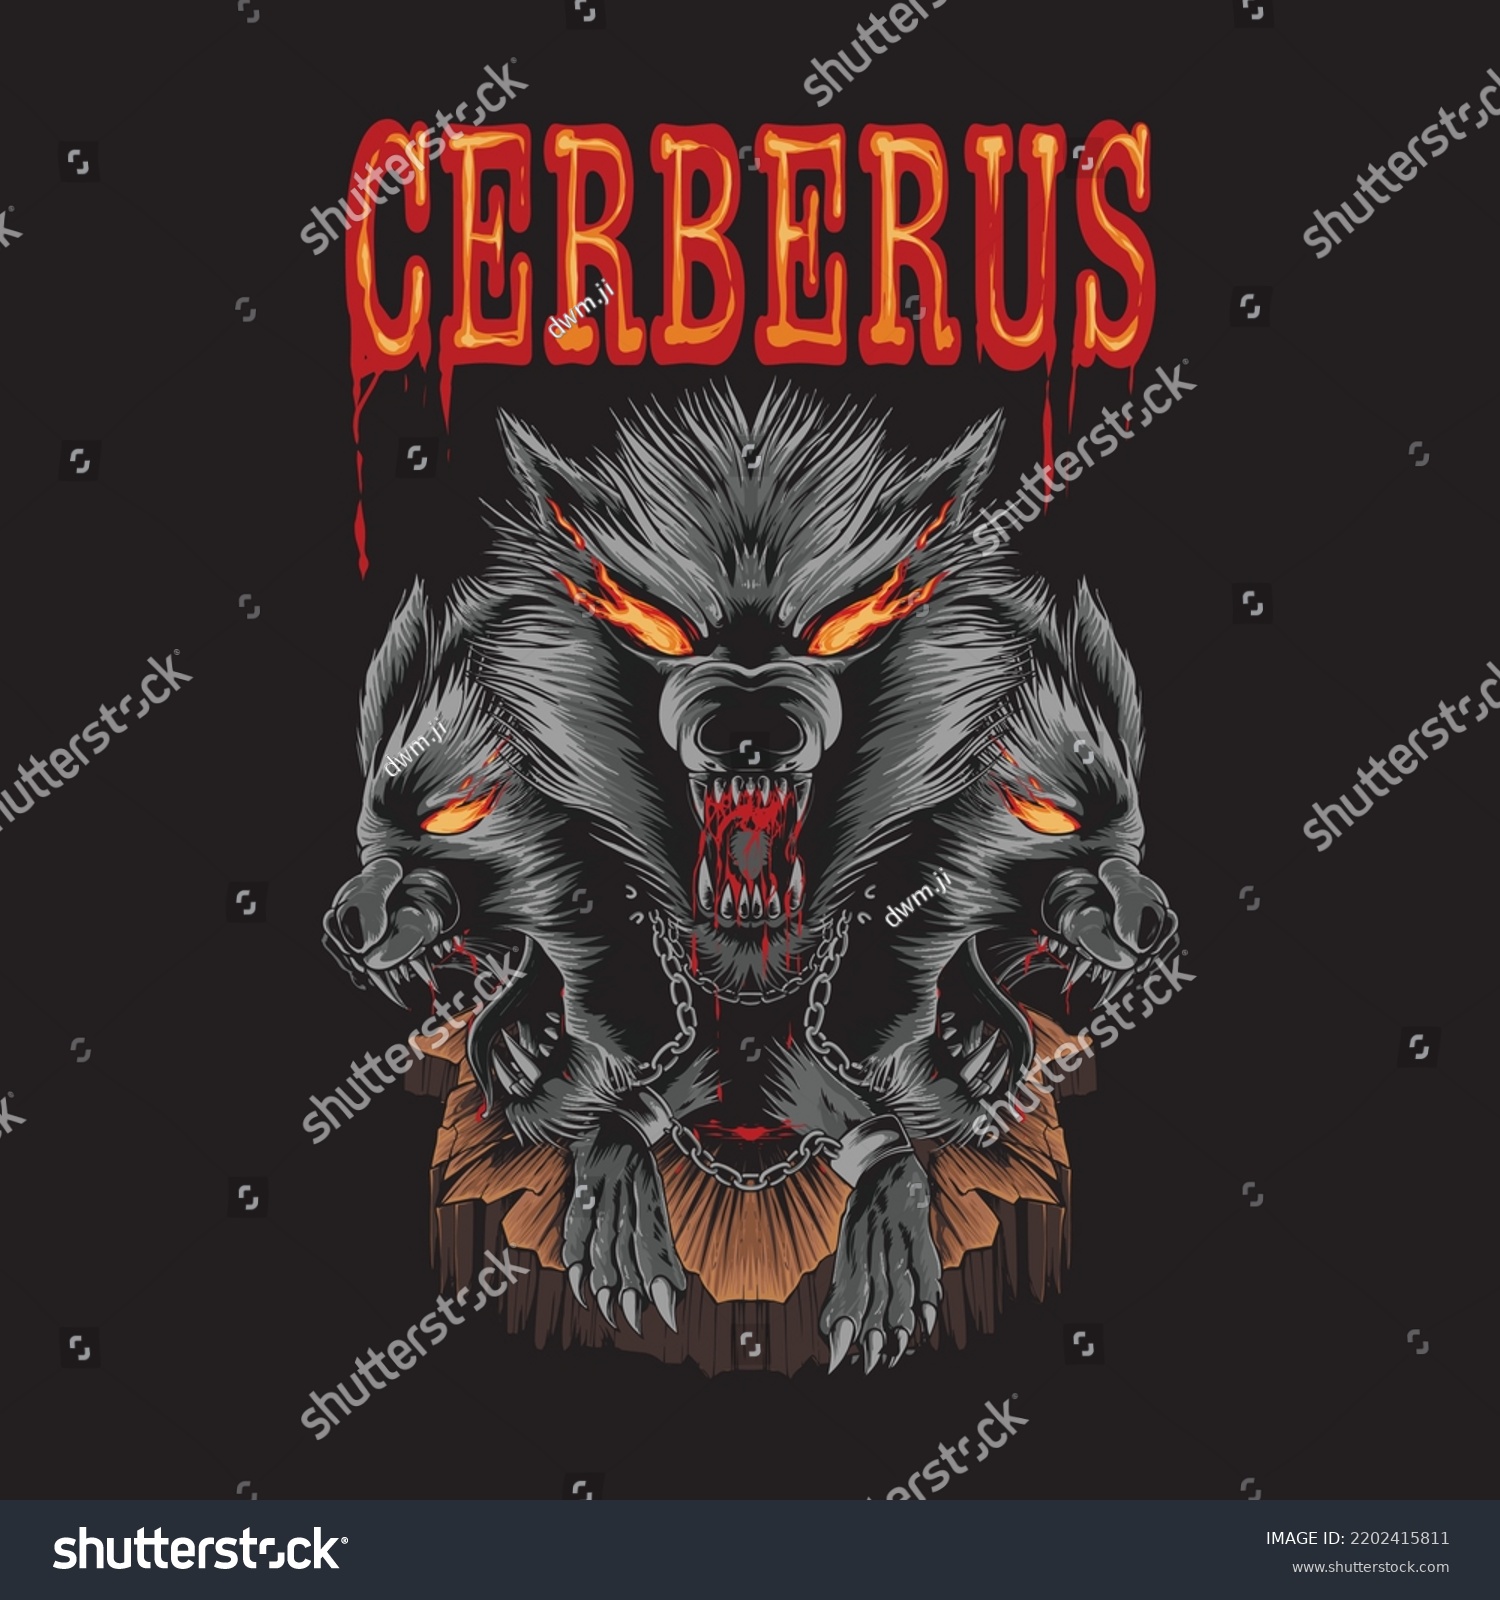 SVG of cerberus illustration for t shirt design svg